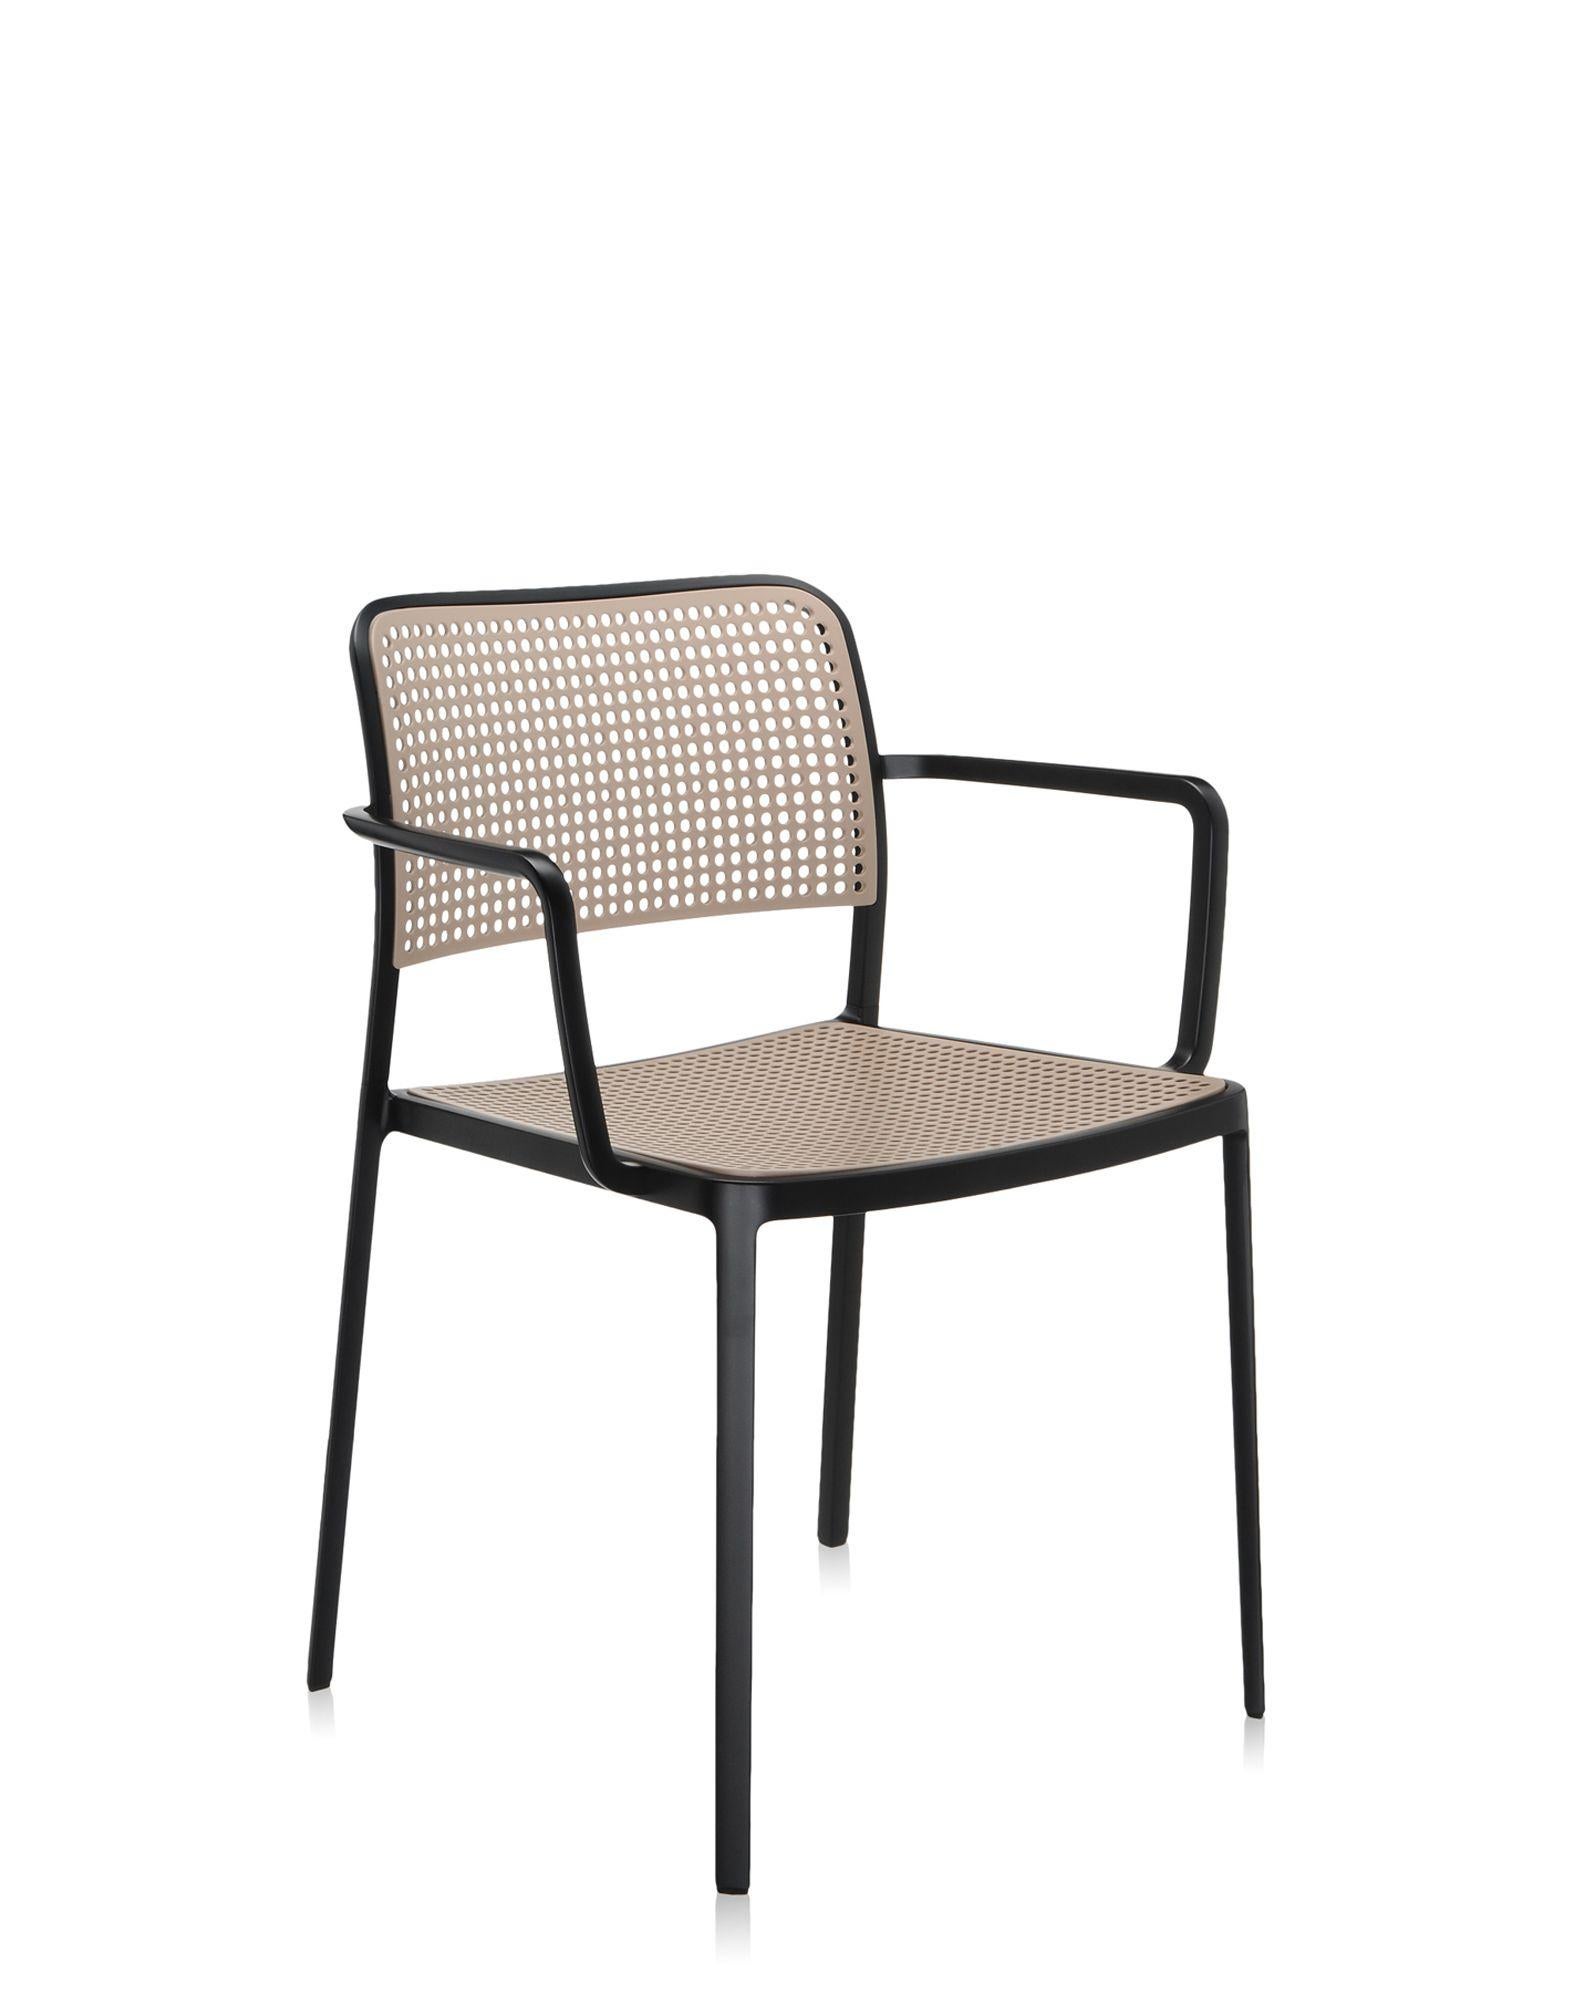 Audrey est une chaise polyvalente et contemporaine qui, grâce à ses lignes simples et épurées obtenues par un procédé spécial de moulage sous pression, est composée de seulement deux parties et réalisée sans soudure. Il est multifonctionnel et